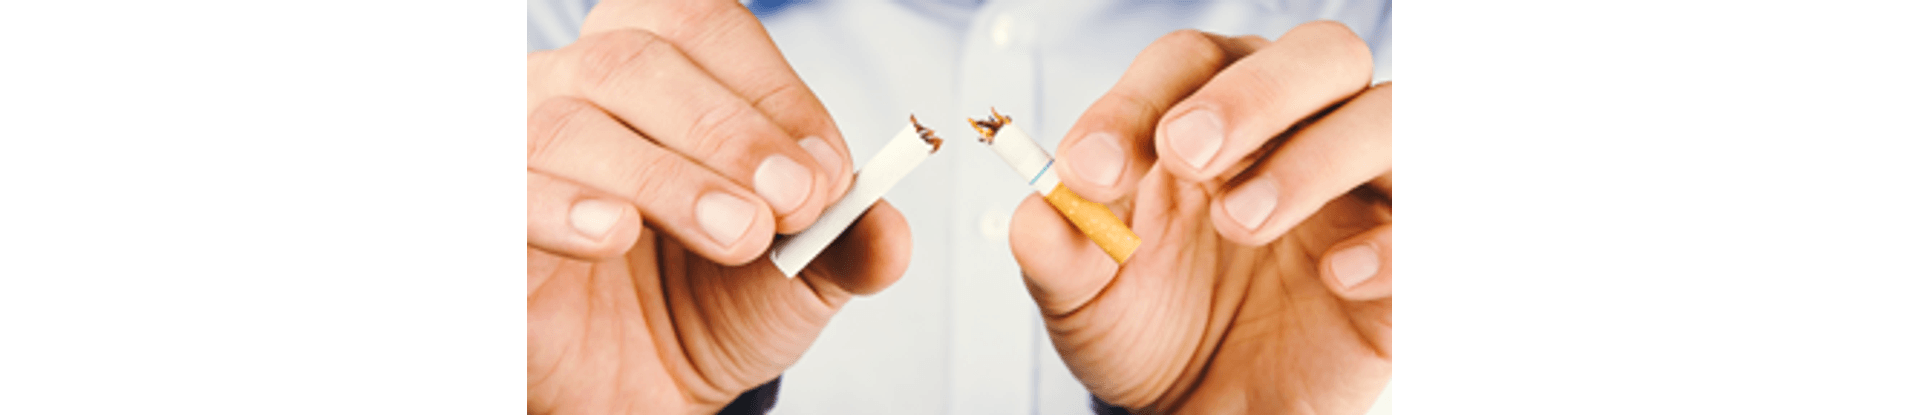 300x144_manejo-tabagismo